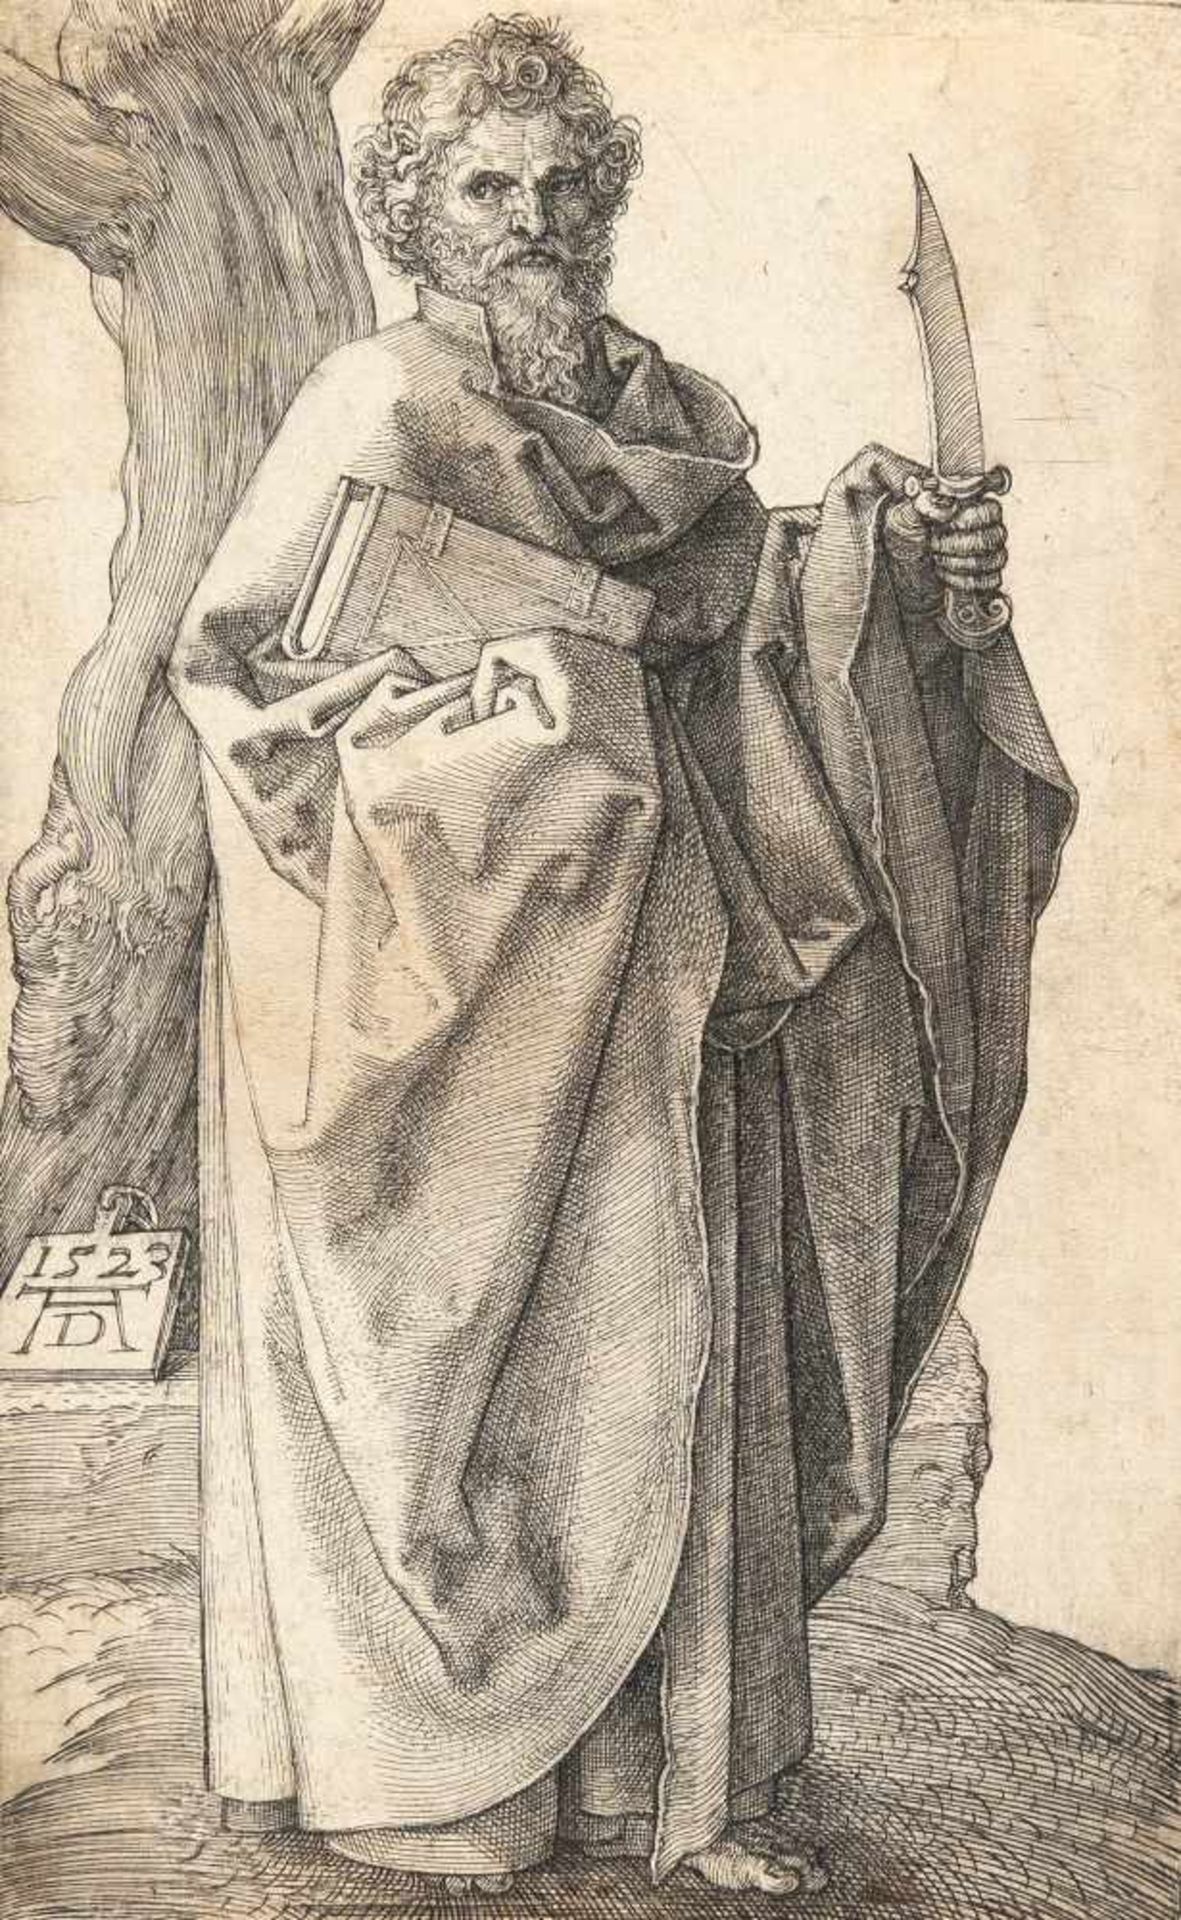 Albrecht Dürer1471 - Nuremberg - 1528Der Apostel BartholomäusKupferstich auf Bütten. (1523). 12,2